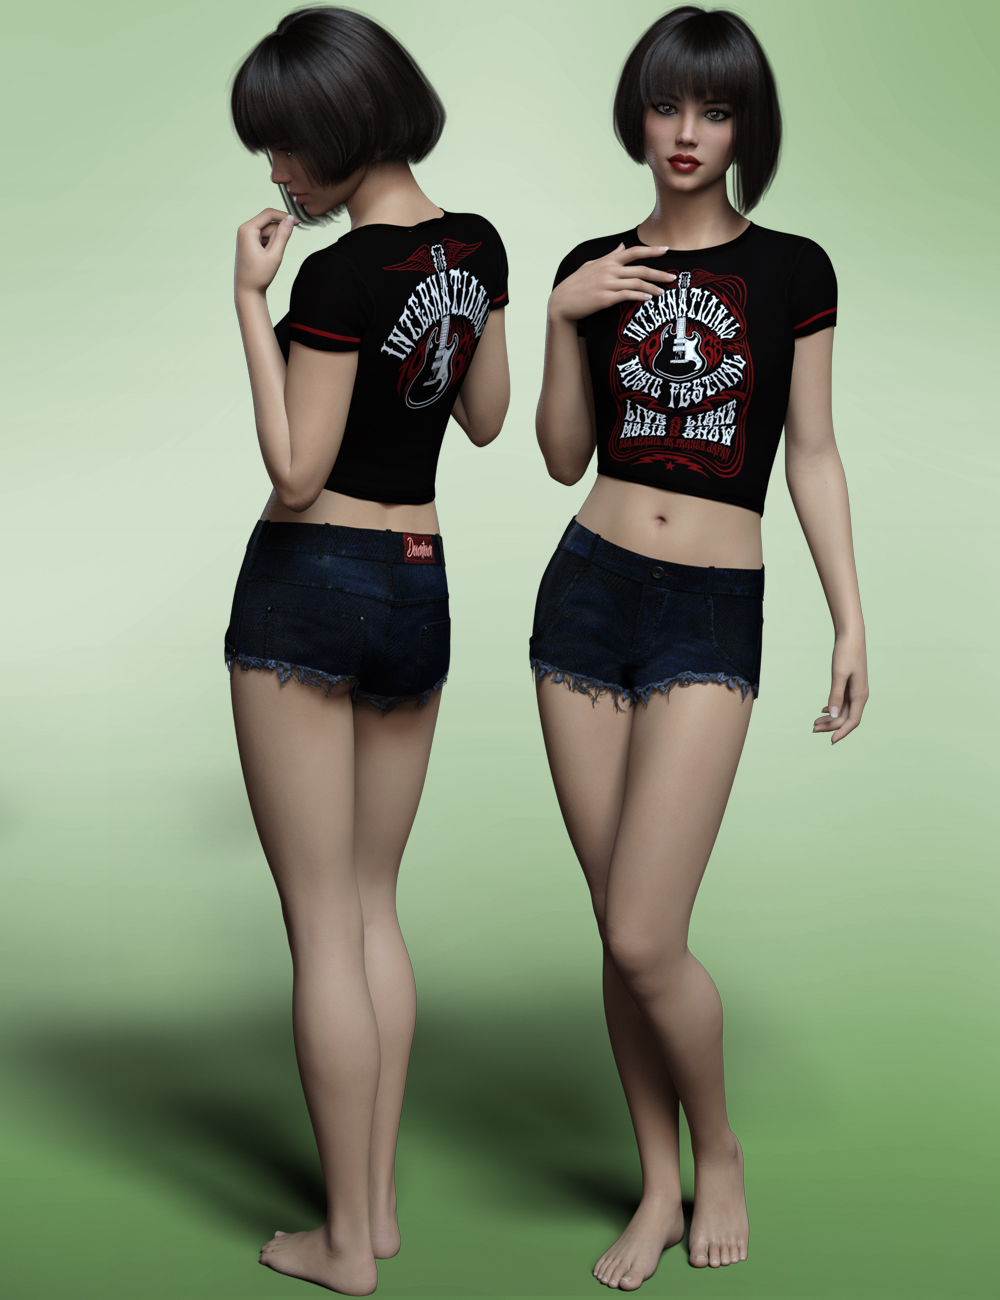 Carmelita HD for Genesis 8 Female(s) by: Fred Winkler Art, 3D Models by Daz 3D